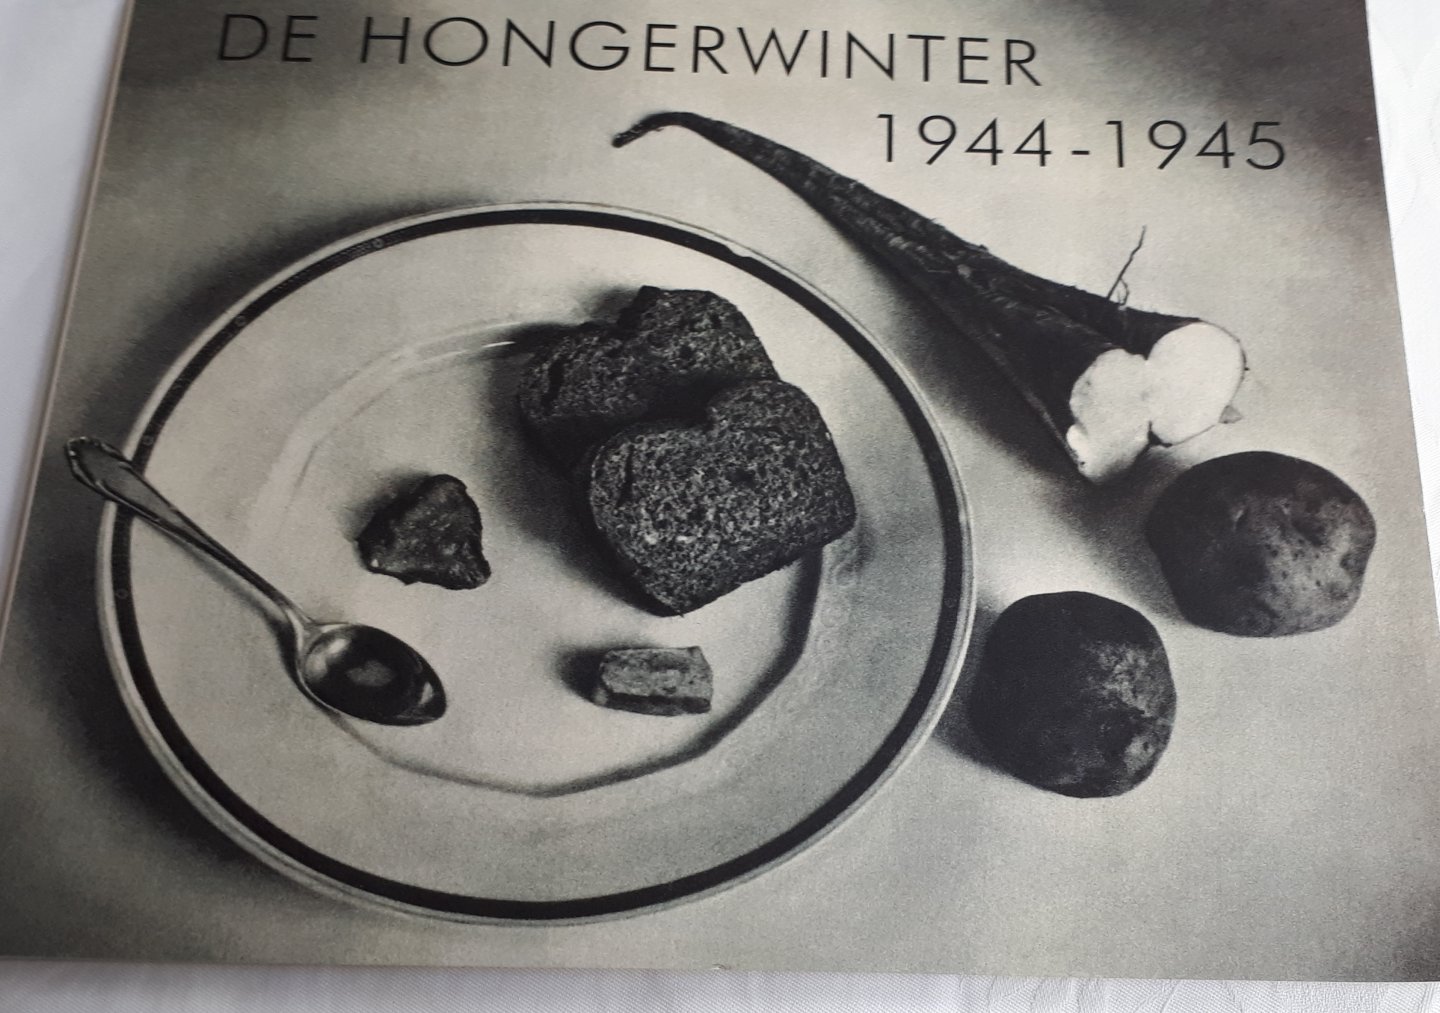 RAAIJ, Rob van - De hongerwinter 1944-1945